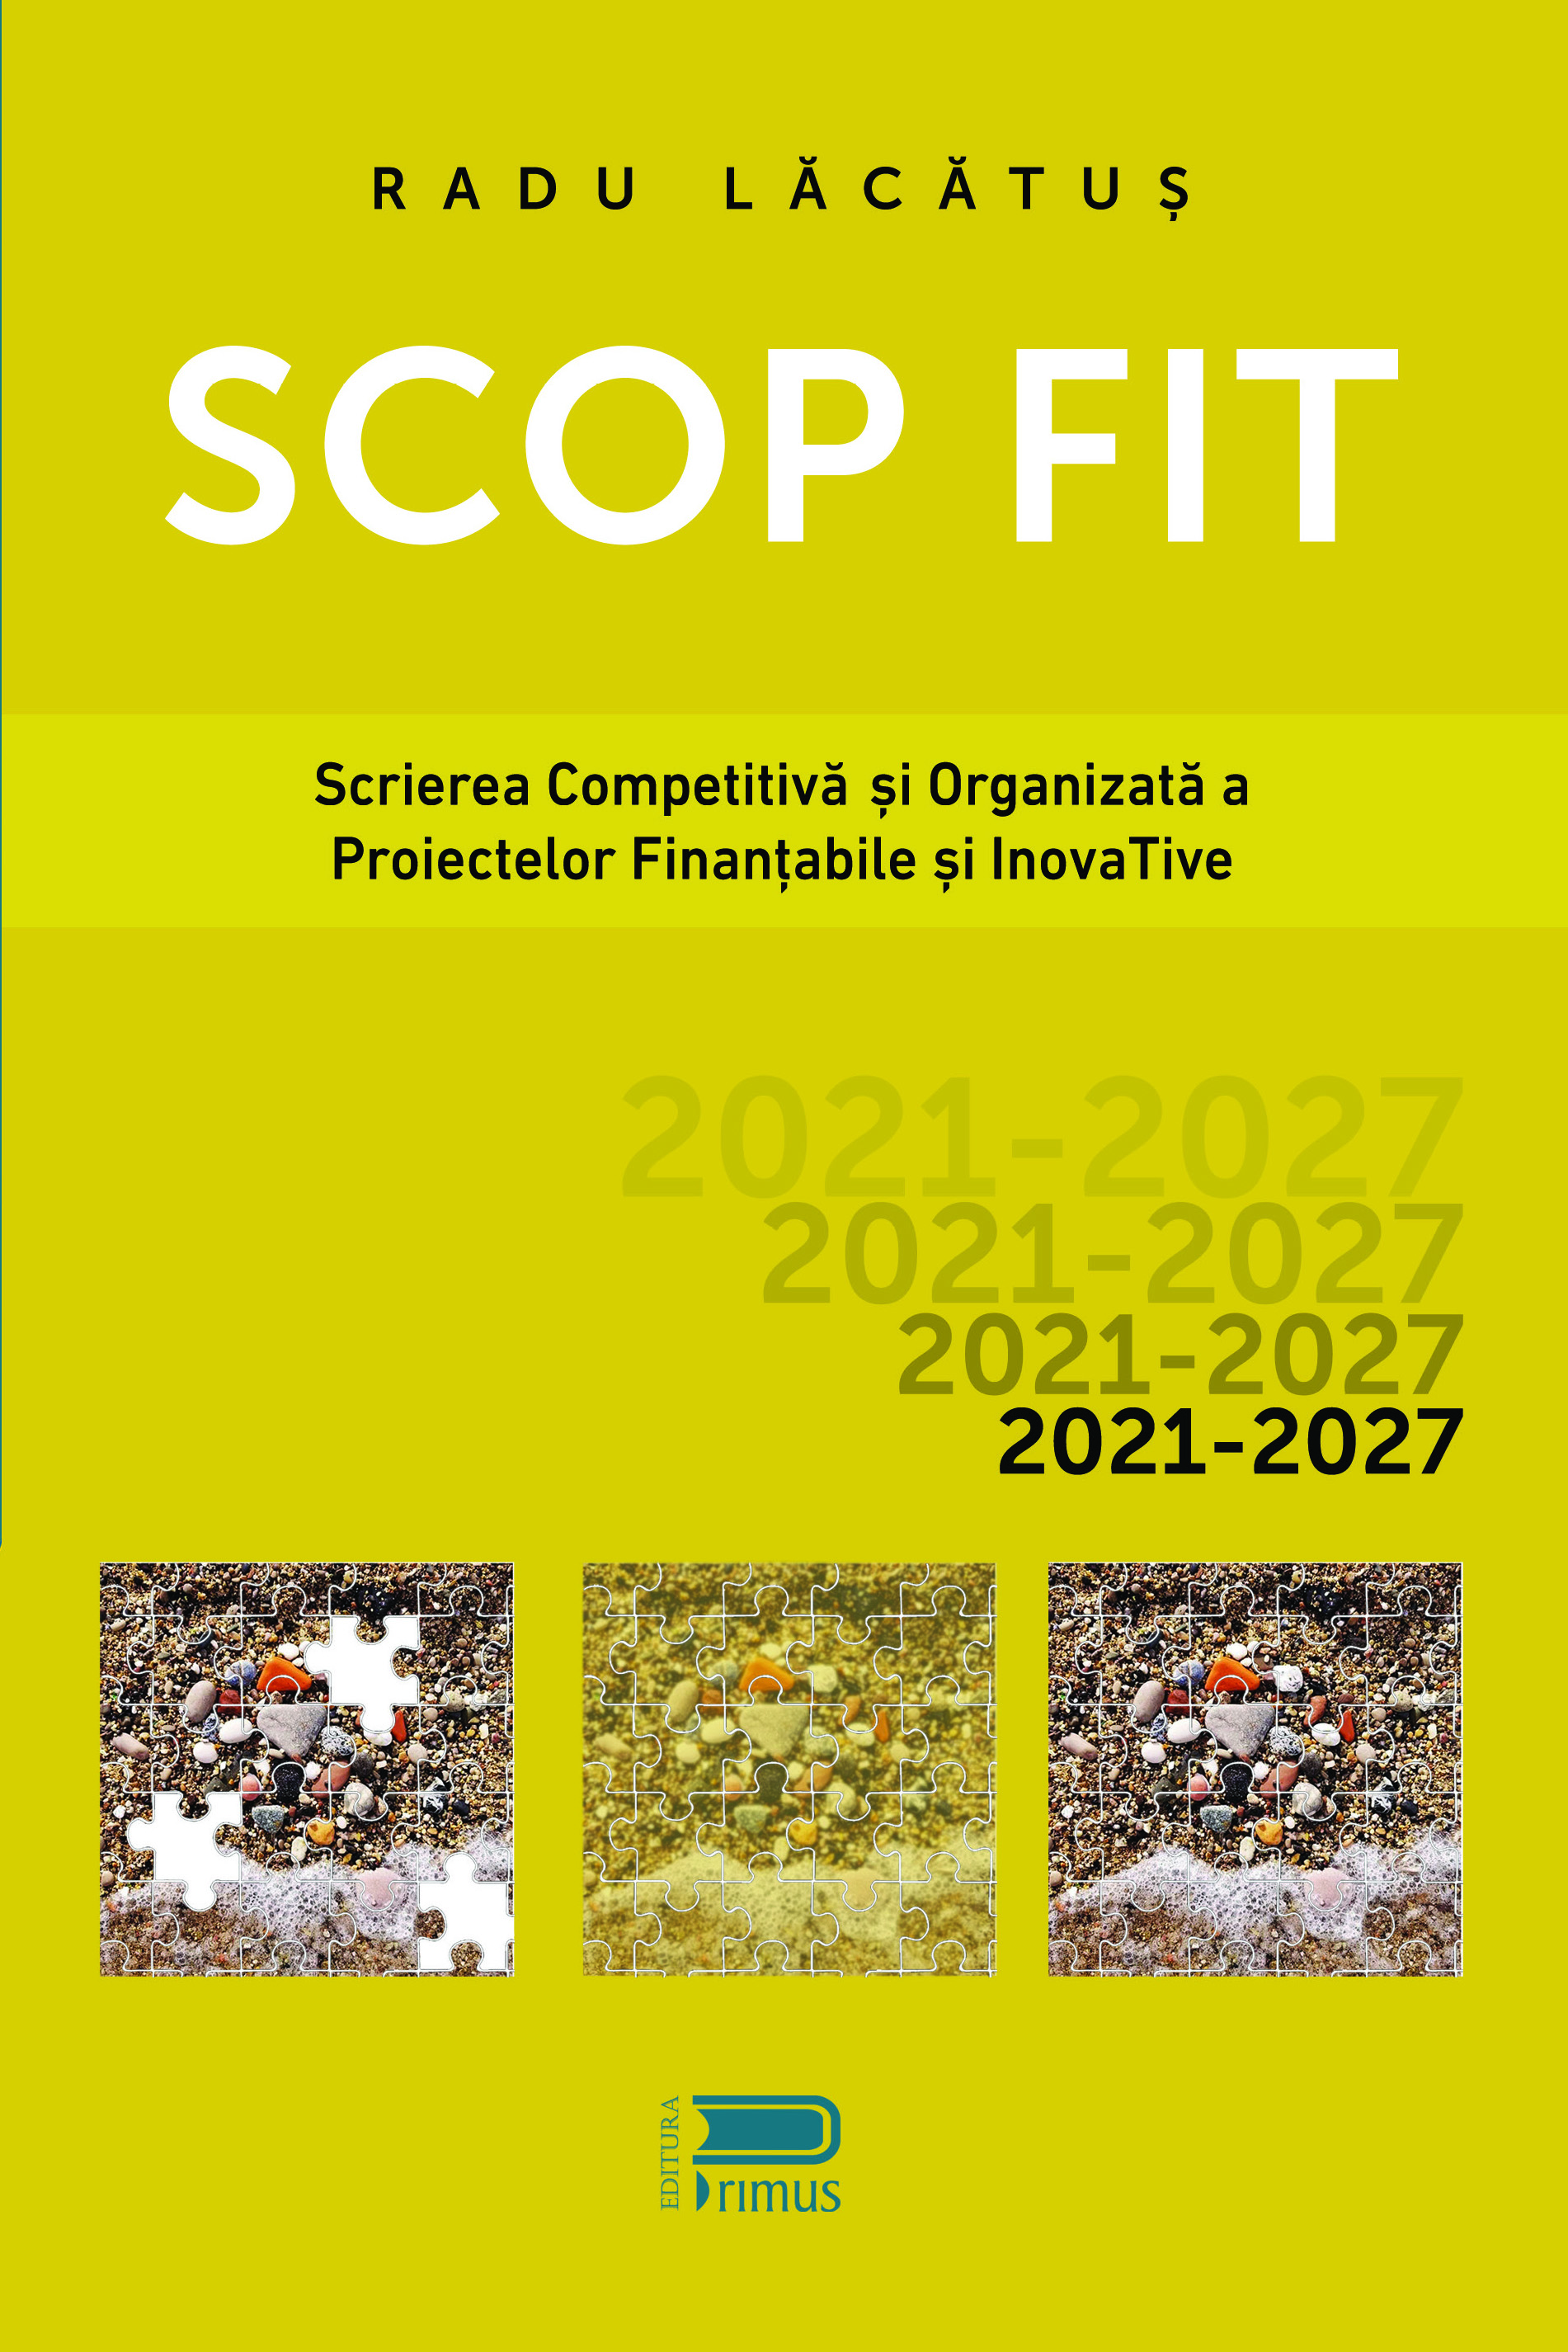 SCOP FIT: Scrierea competitiva si organizata a proiectelor finantabile si inovative | Radu Lacatus